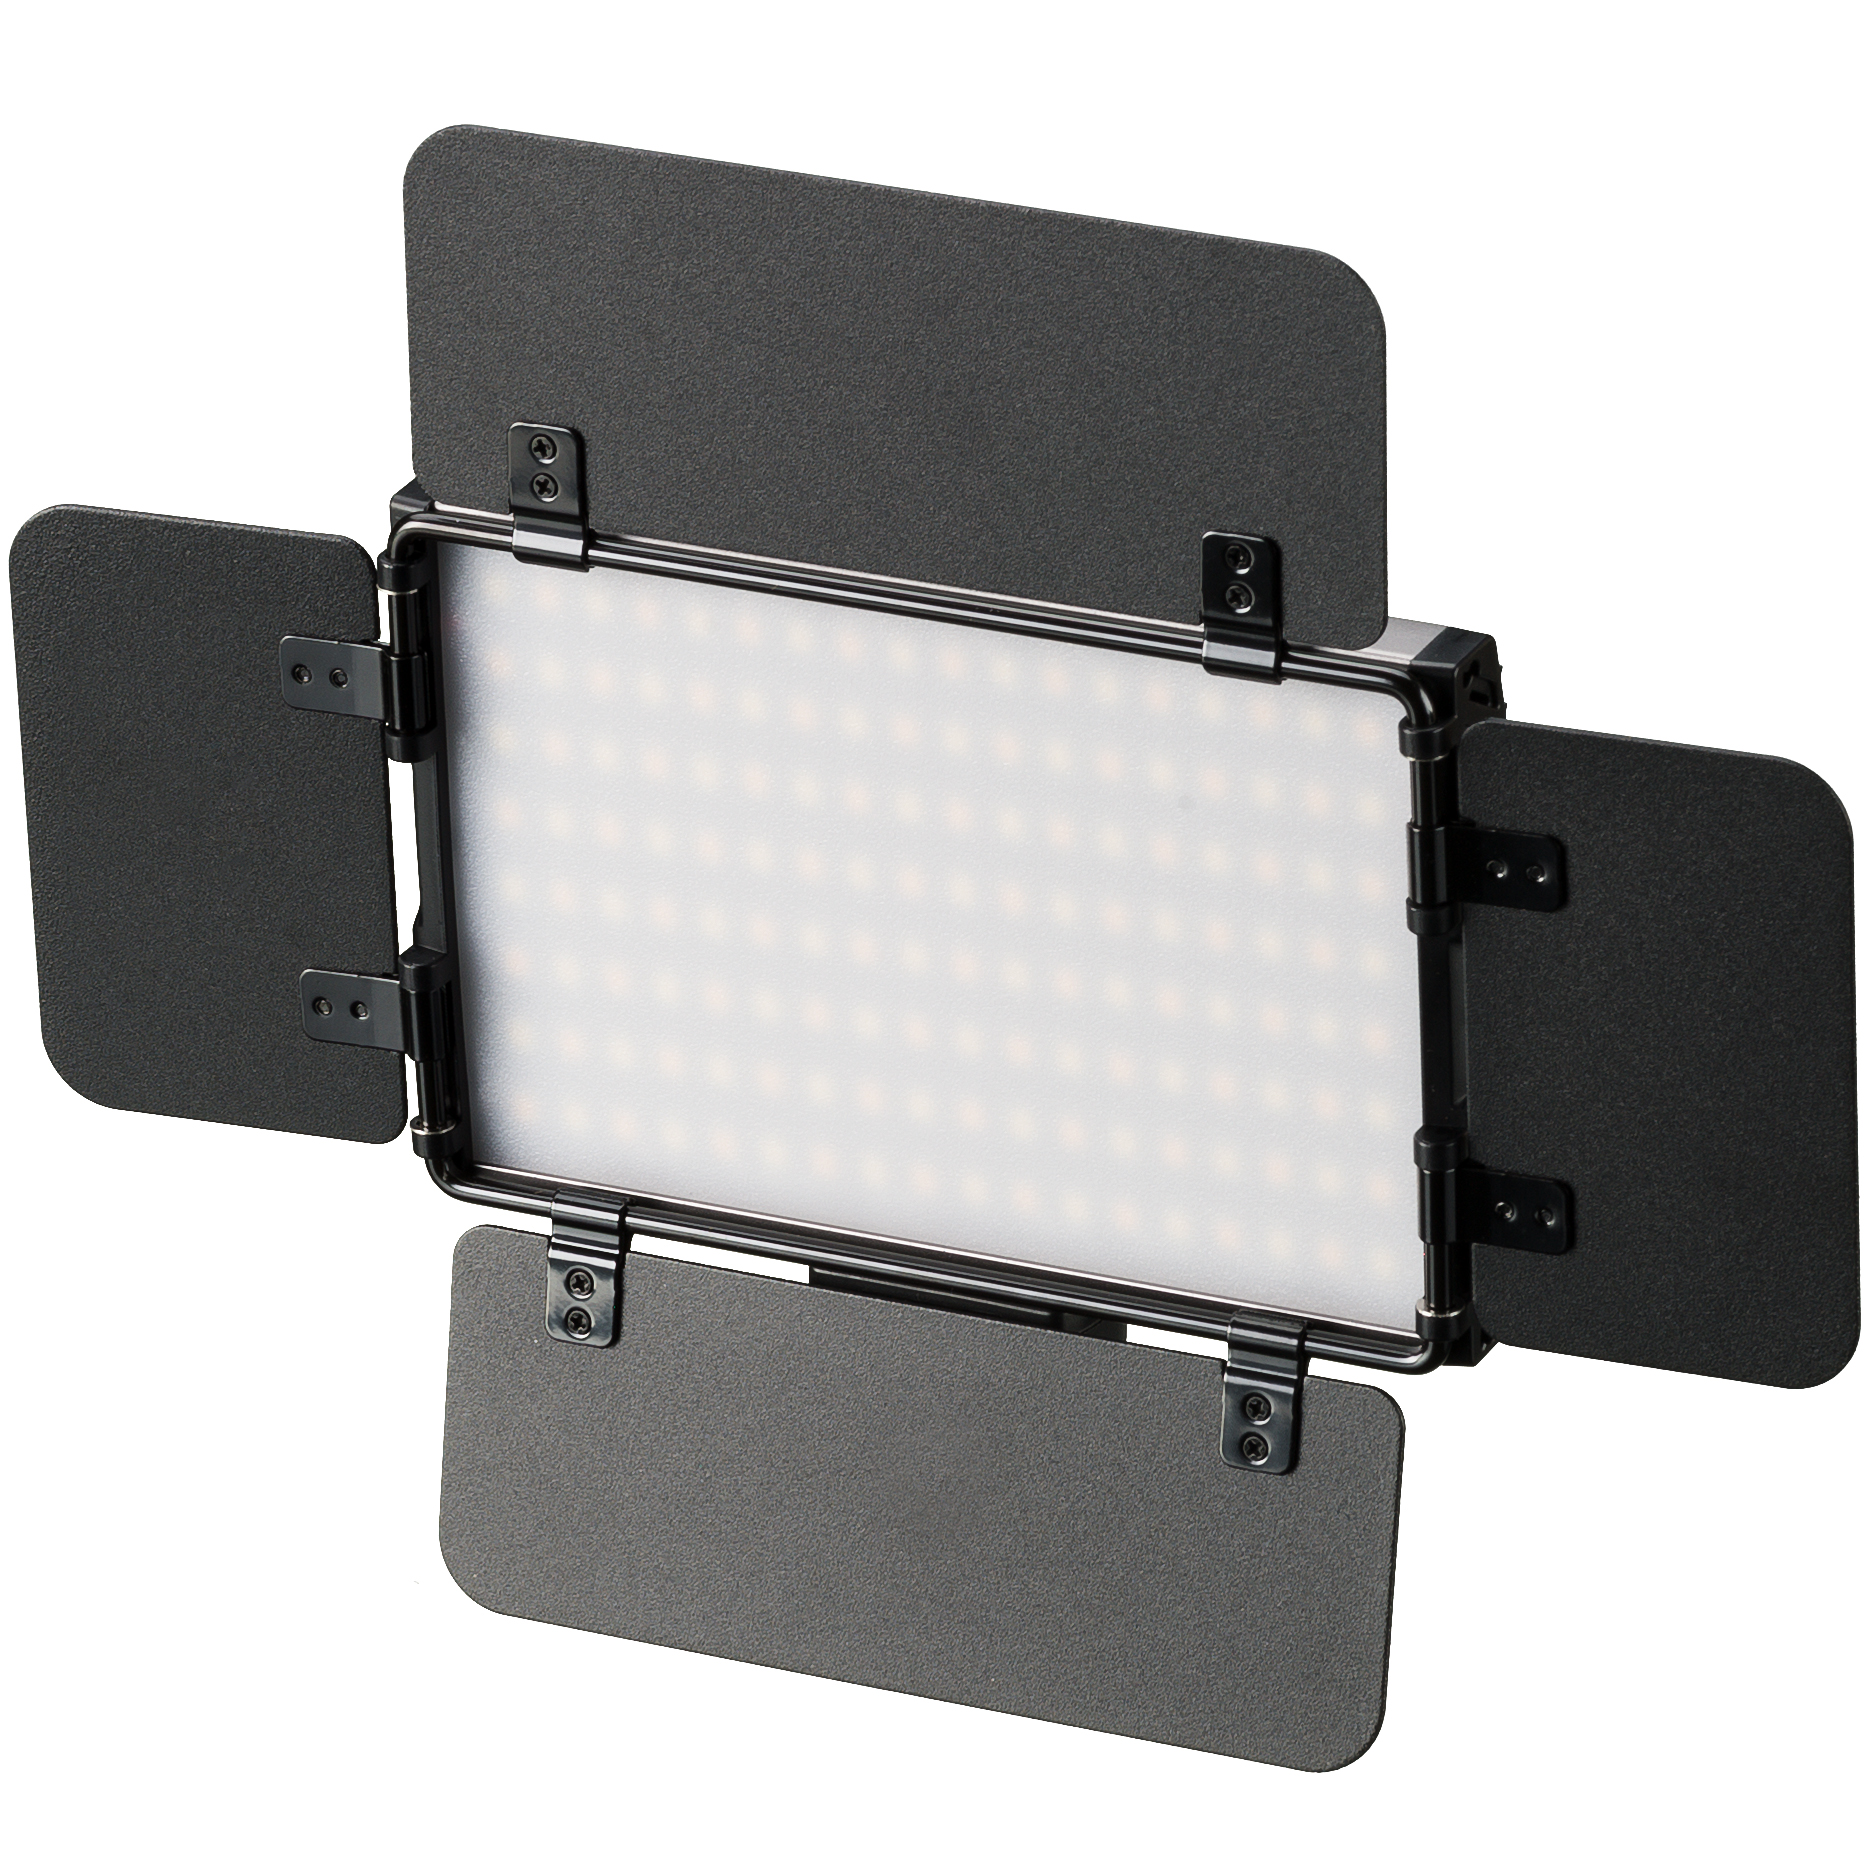 Pannello luminoso a LED bicolore BRESSER PT Pro 15B-II con alette frangiluce, batteria e custodia